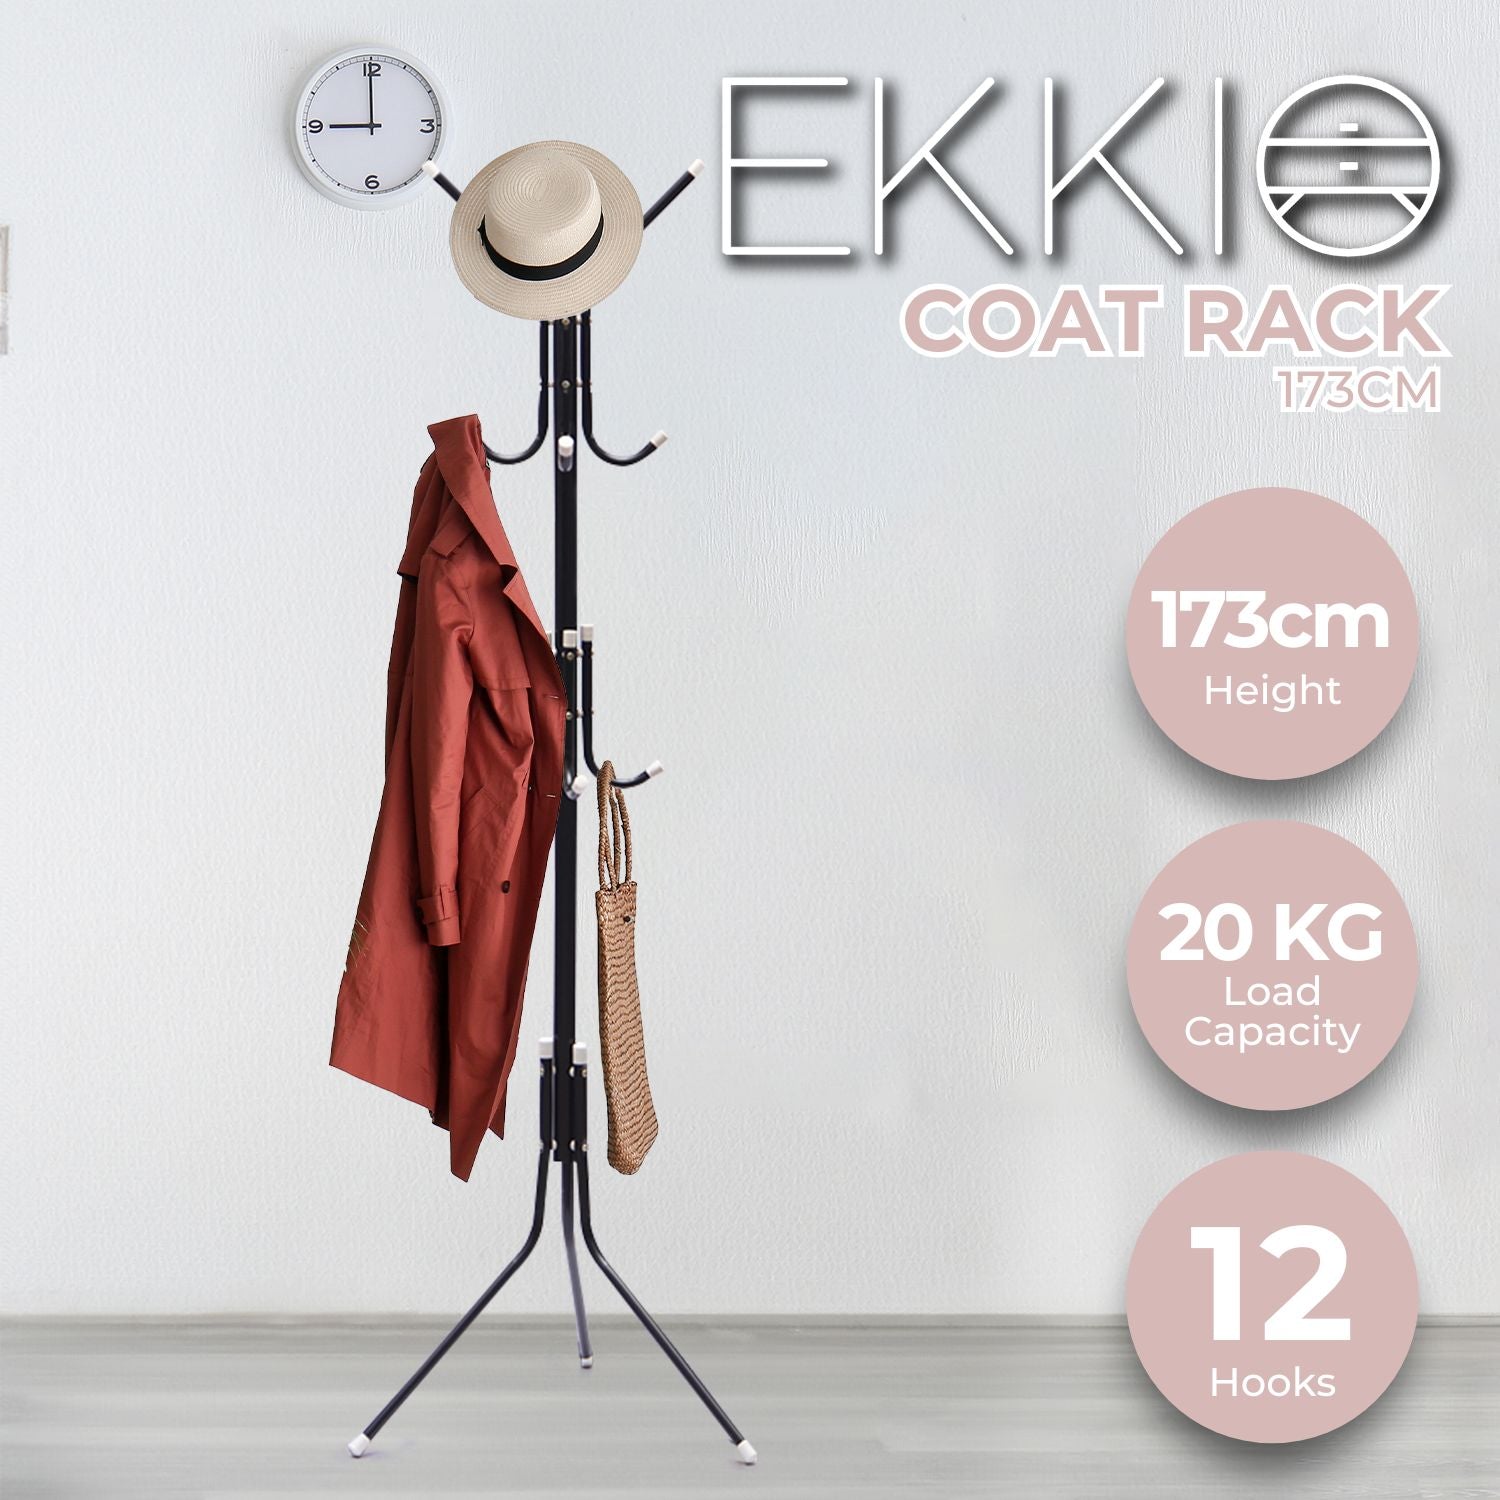 EKKIO 12 Hook Metal Coat Rack Stand with 3-Tier Hat Hanger (Black)